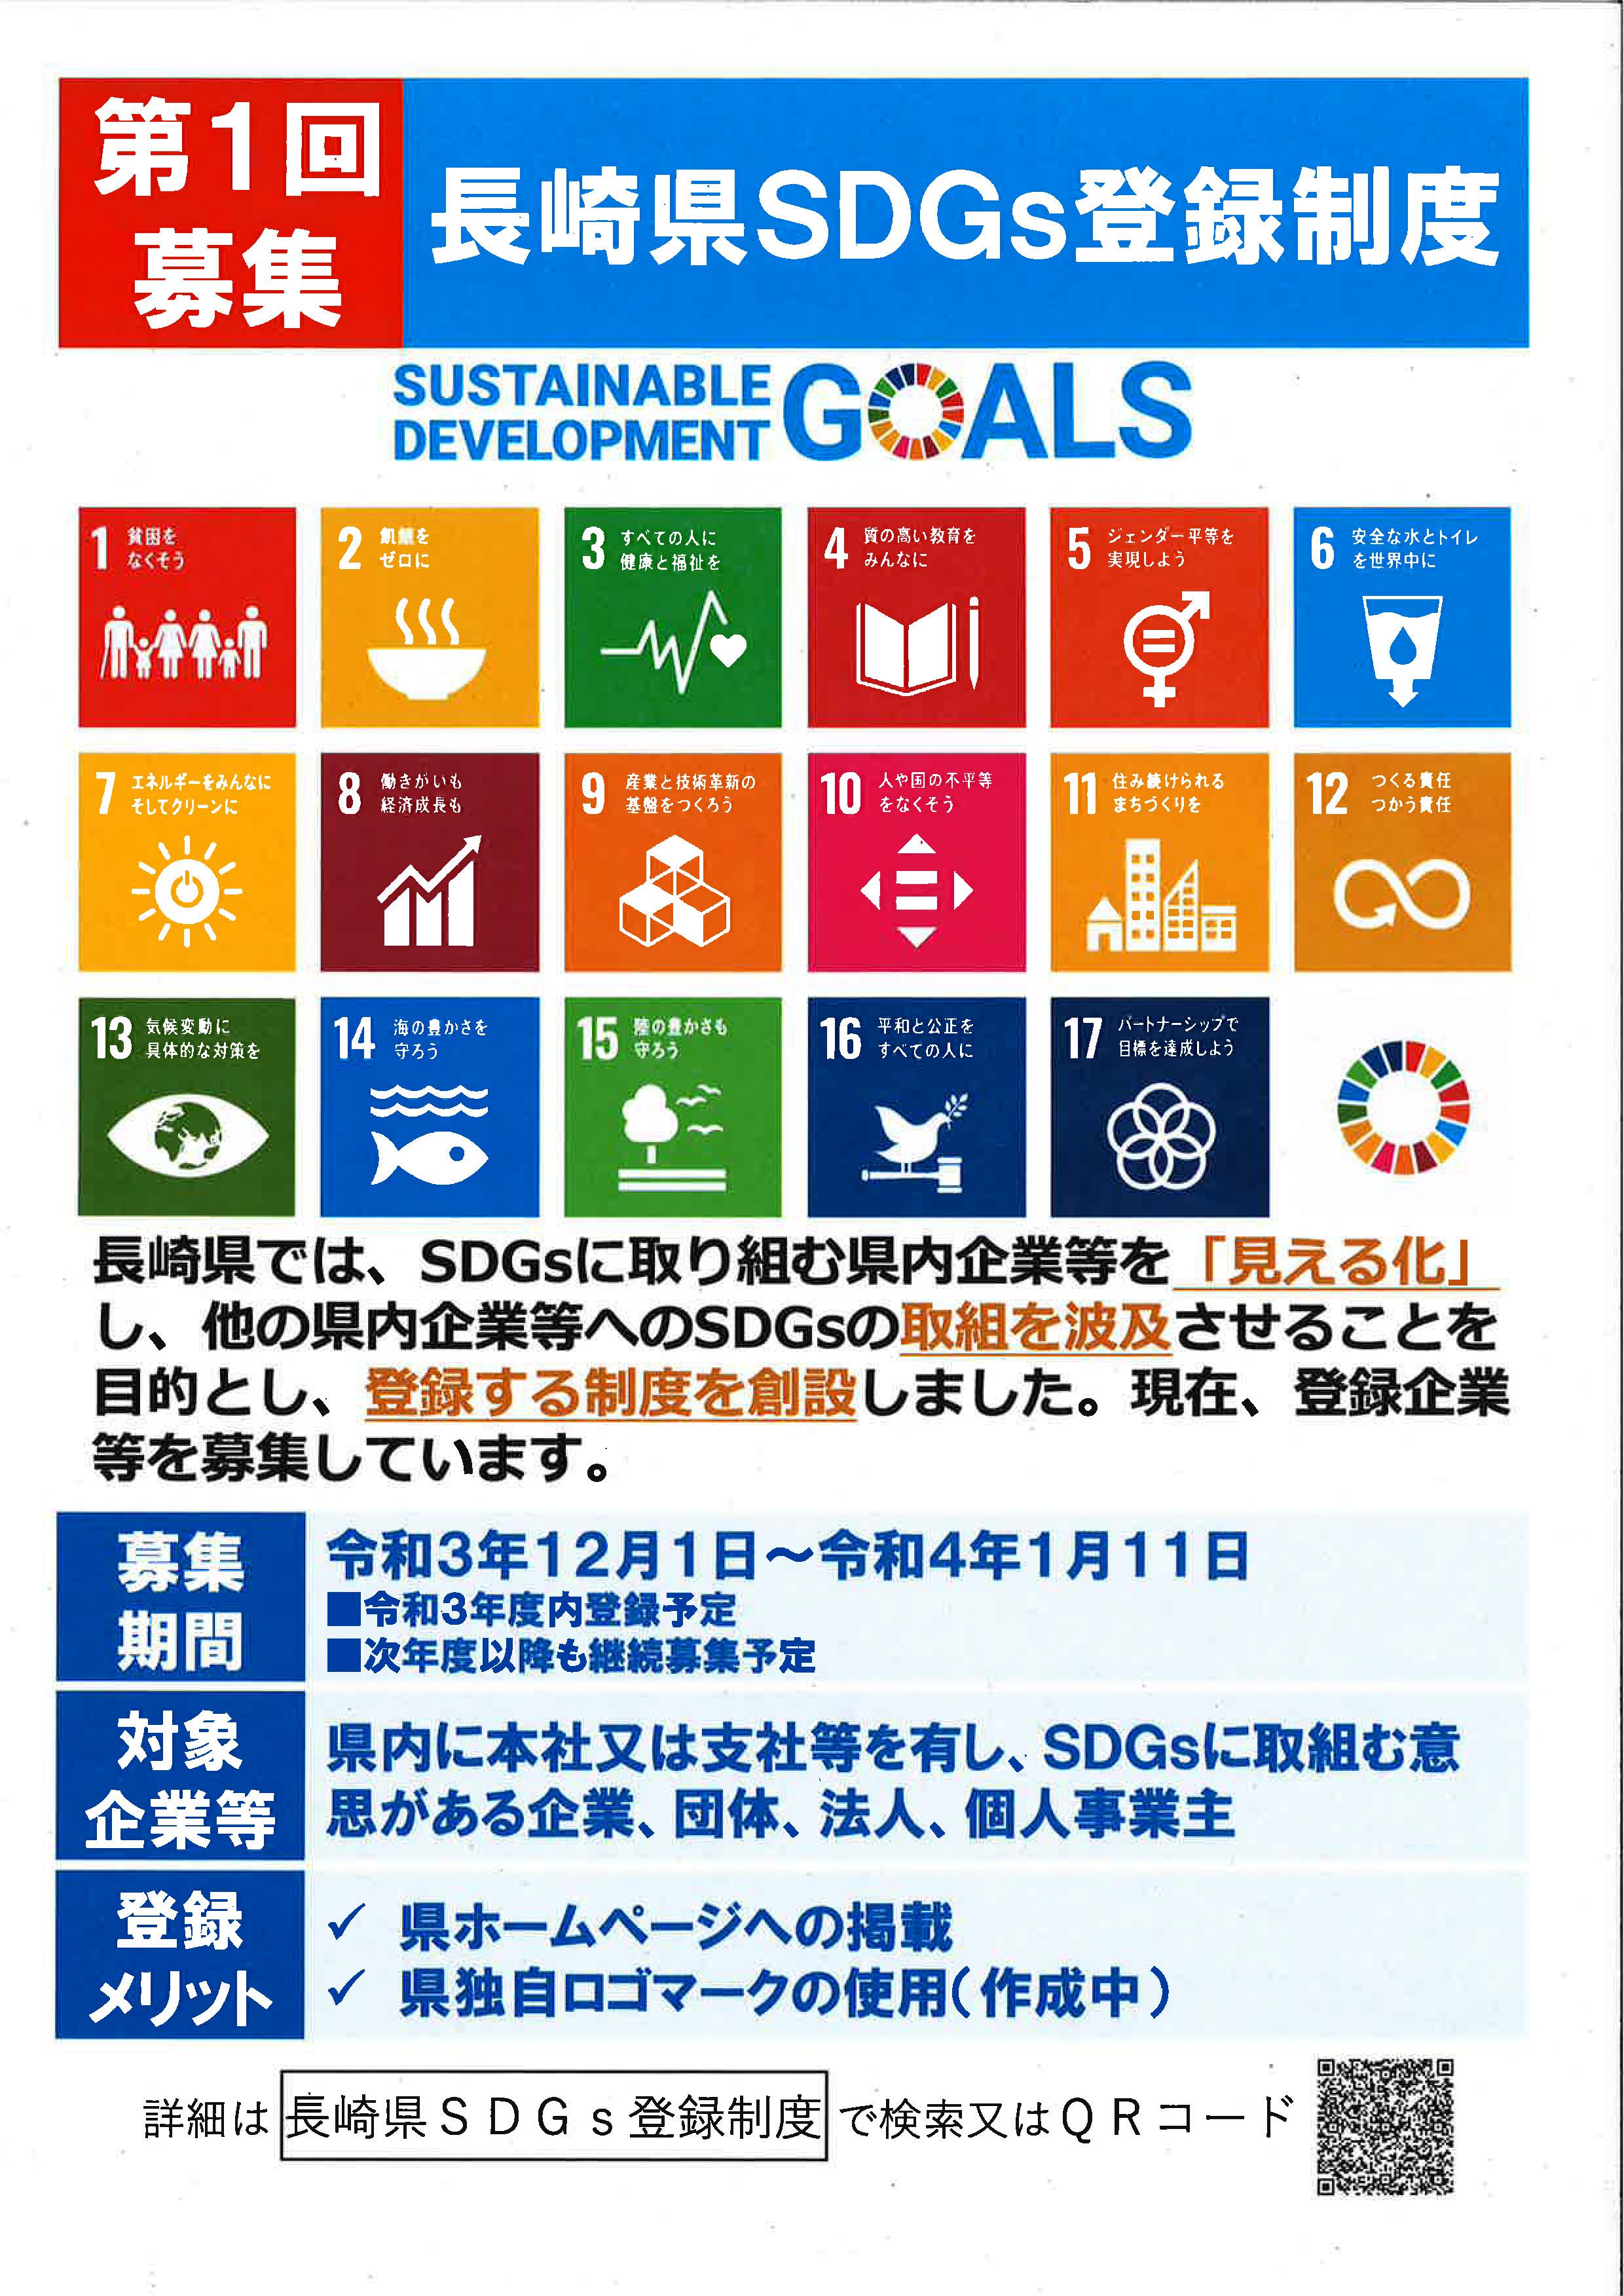 「長崎県SDGs登録制度」創設のお知らせ